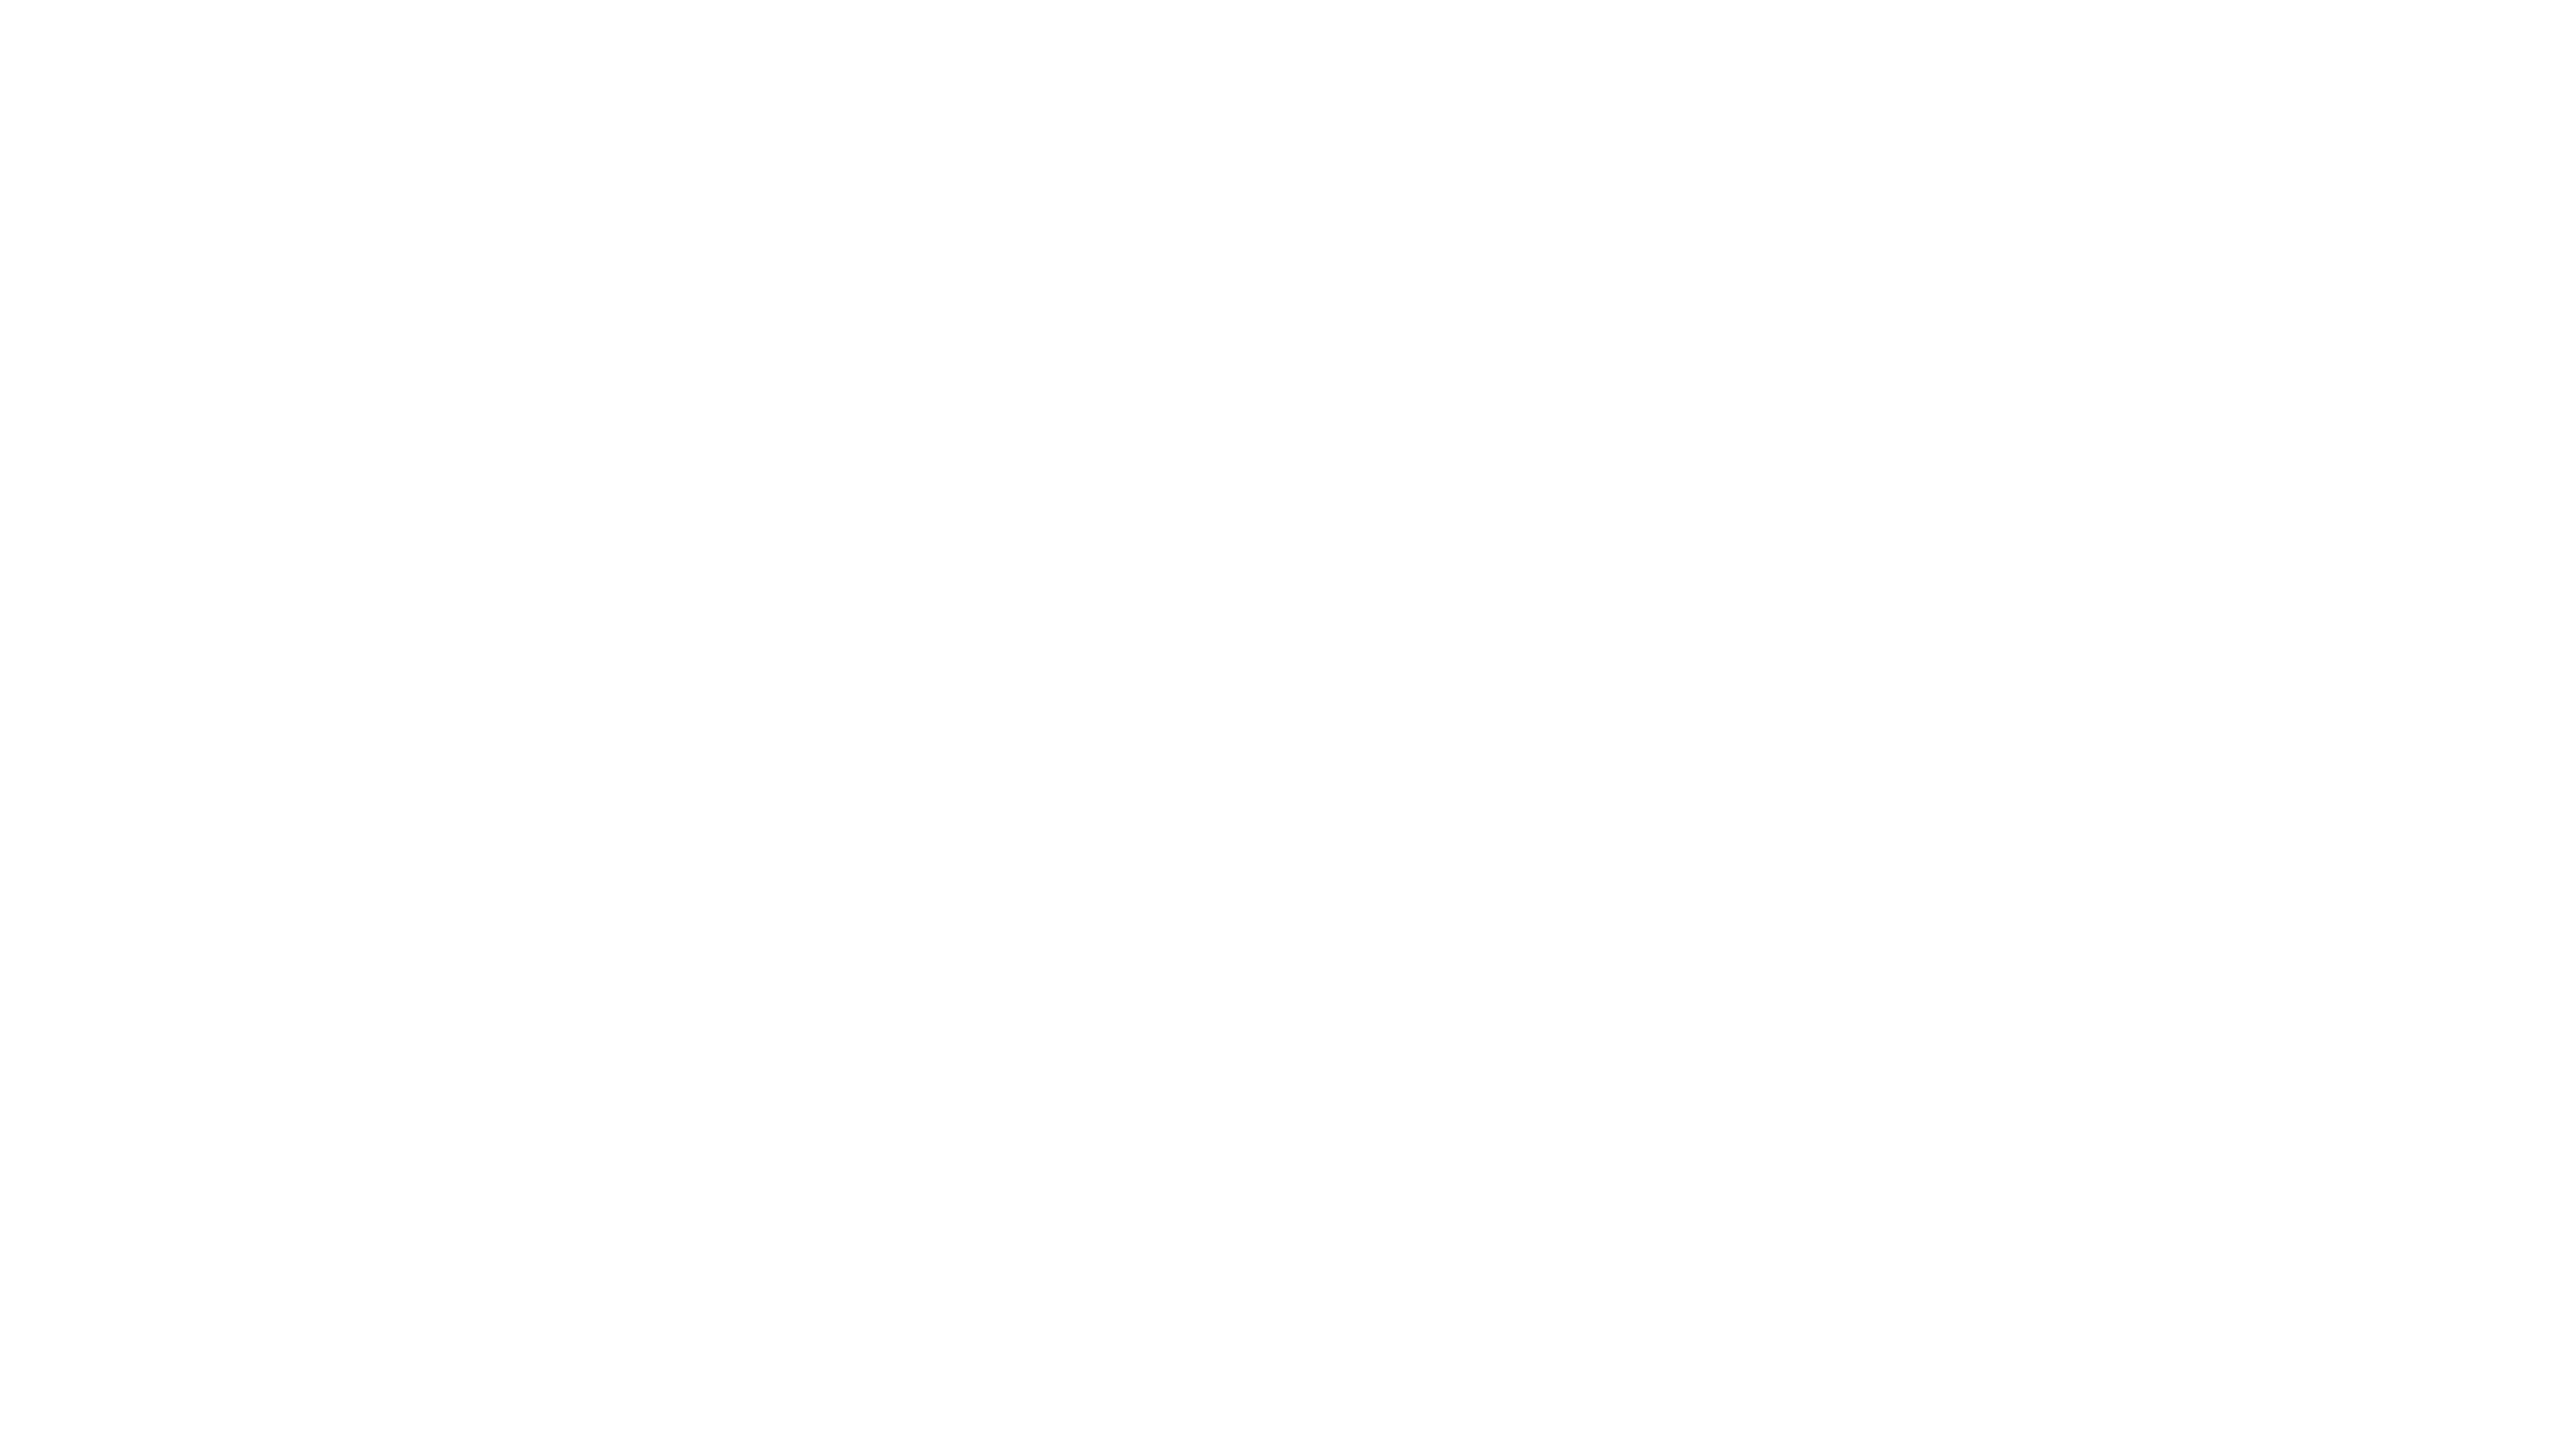 Leia K